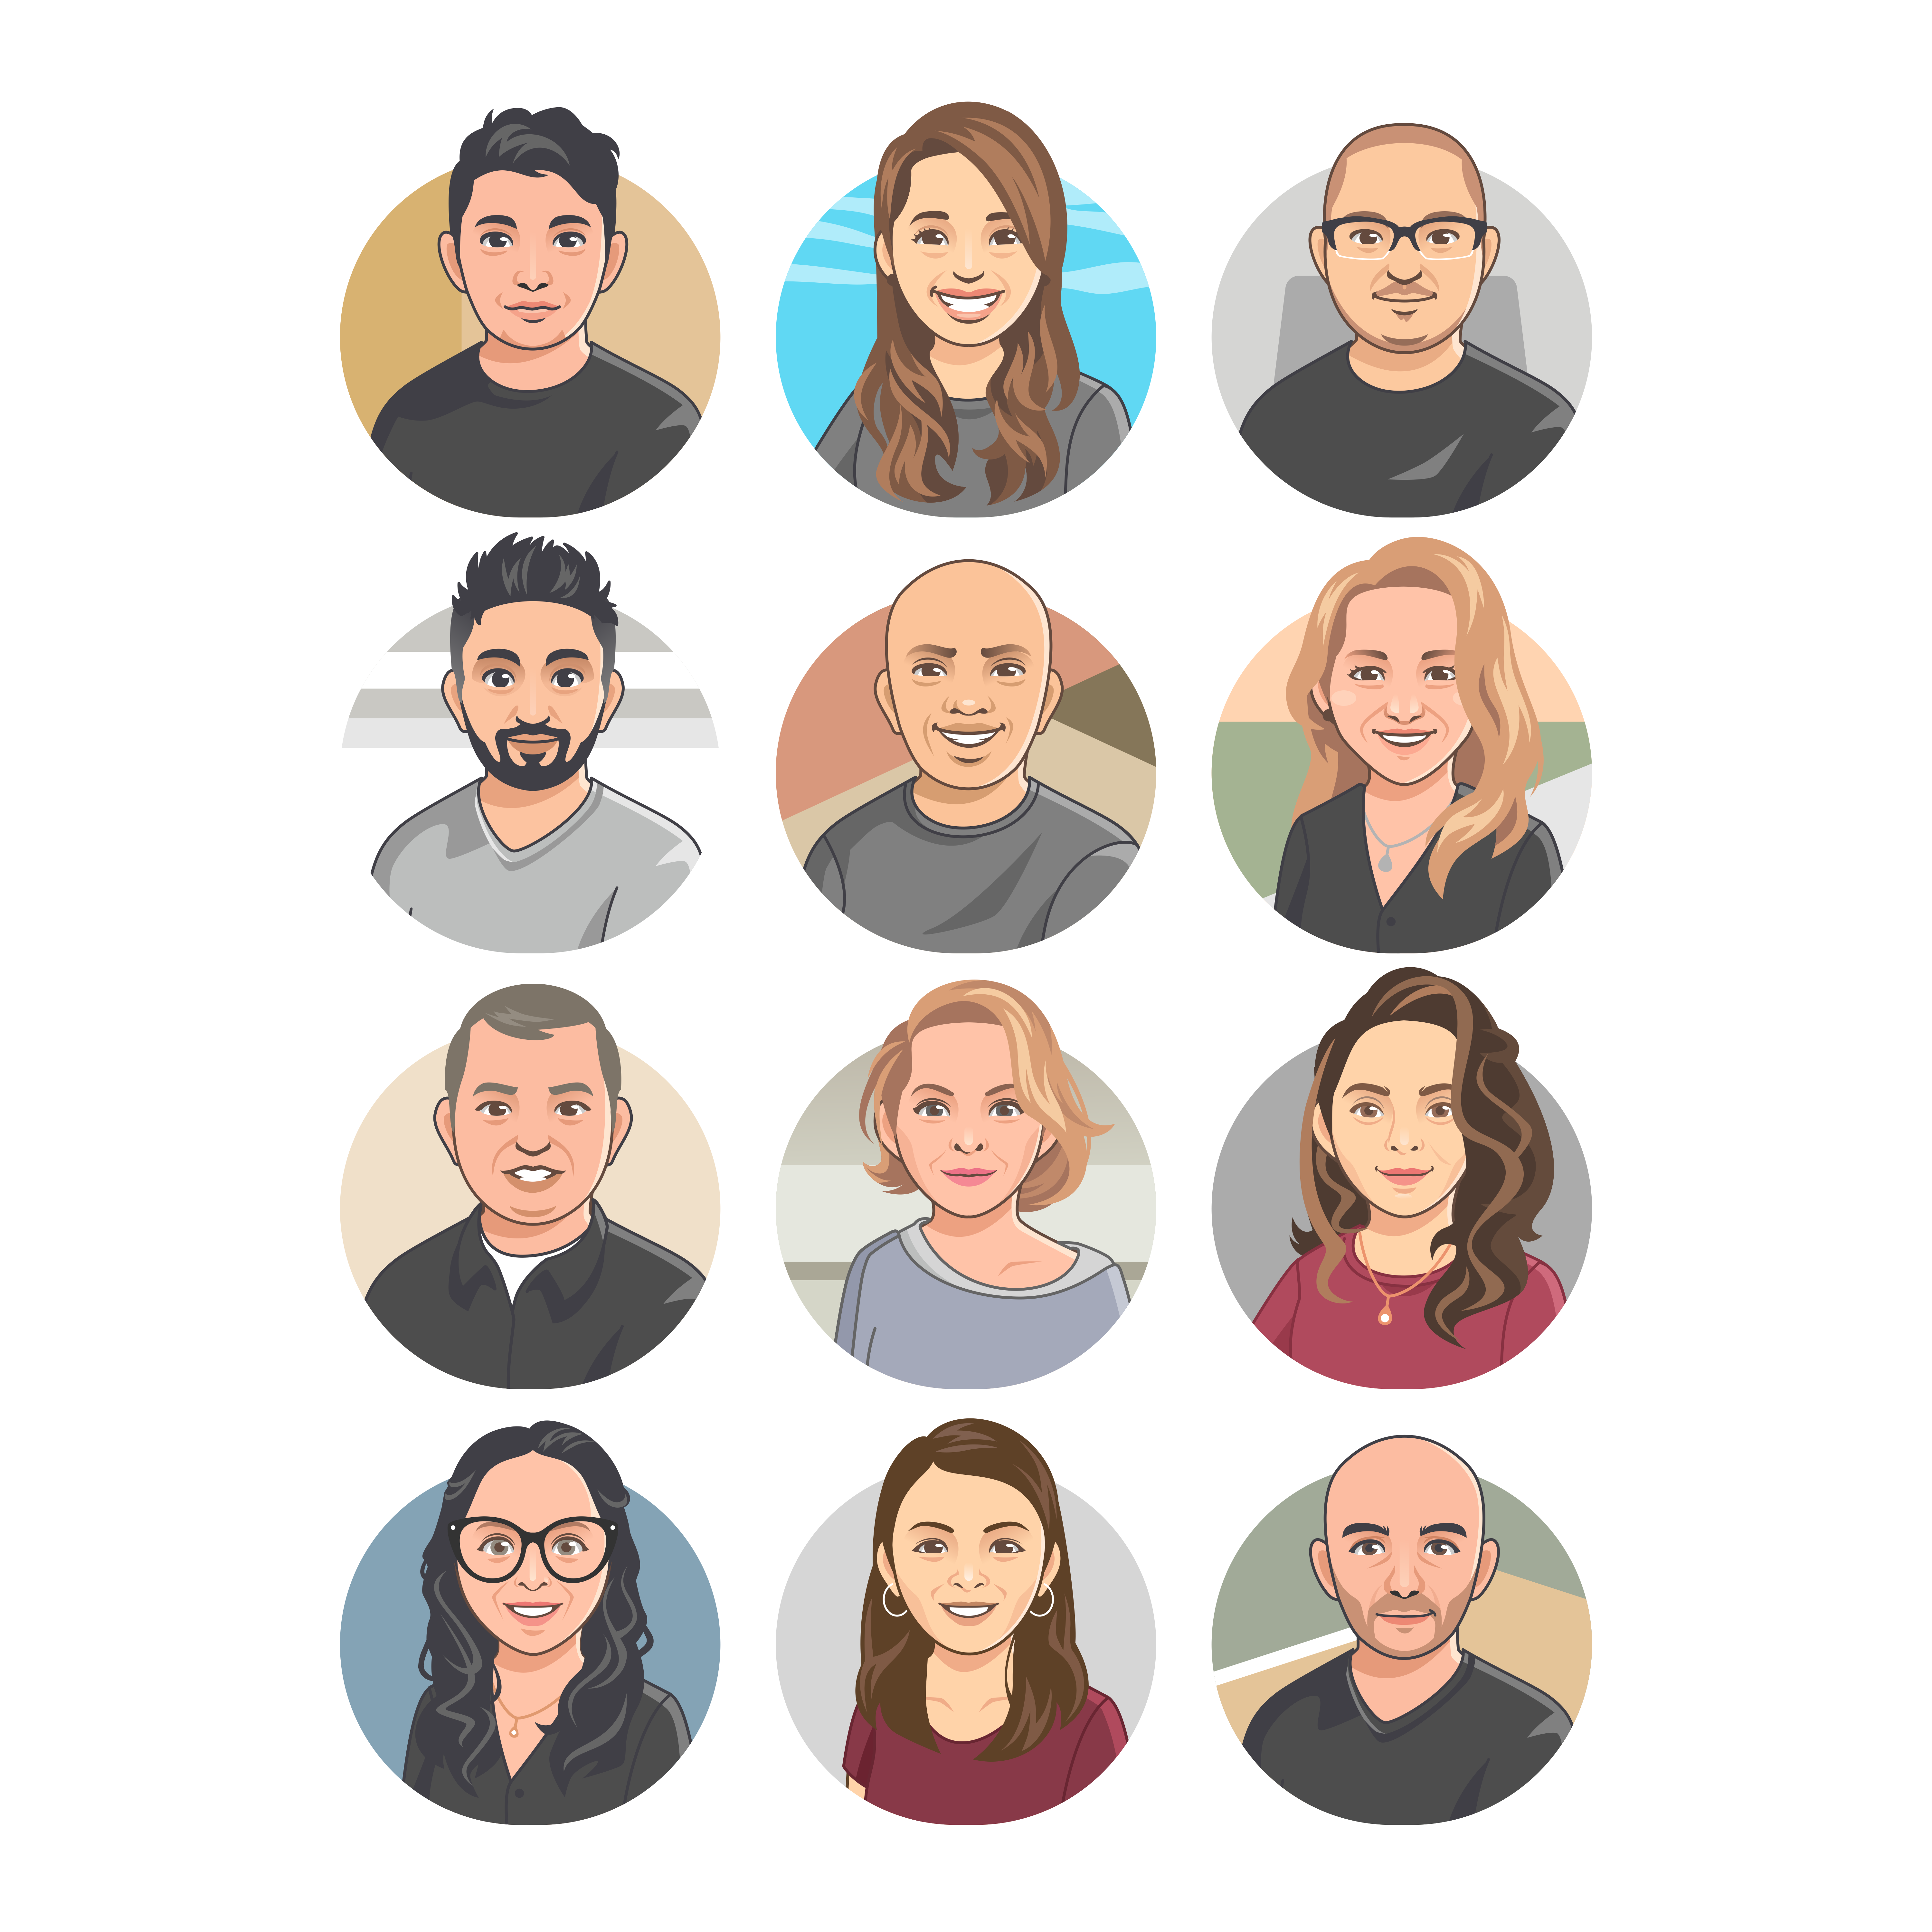 Tổng hợp 92+ công cụ thiết kế avatar là một tài nguyên vô giá cho những ai yêu thích tạo avatar độc đáo. Trong đó, bạn sẽ có thể tìm thấy các công cụ thiết kế tuyệt vời để tạo ra hình ảnh đại diện độc đáo và cá tính, giúp bạn nổi bật trên mạng xã hội.